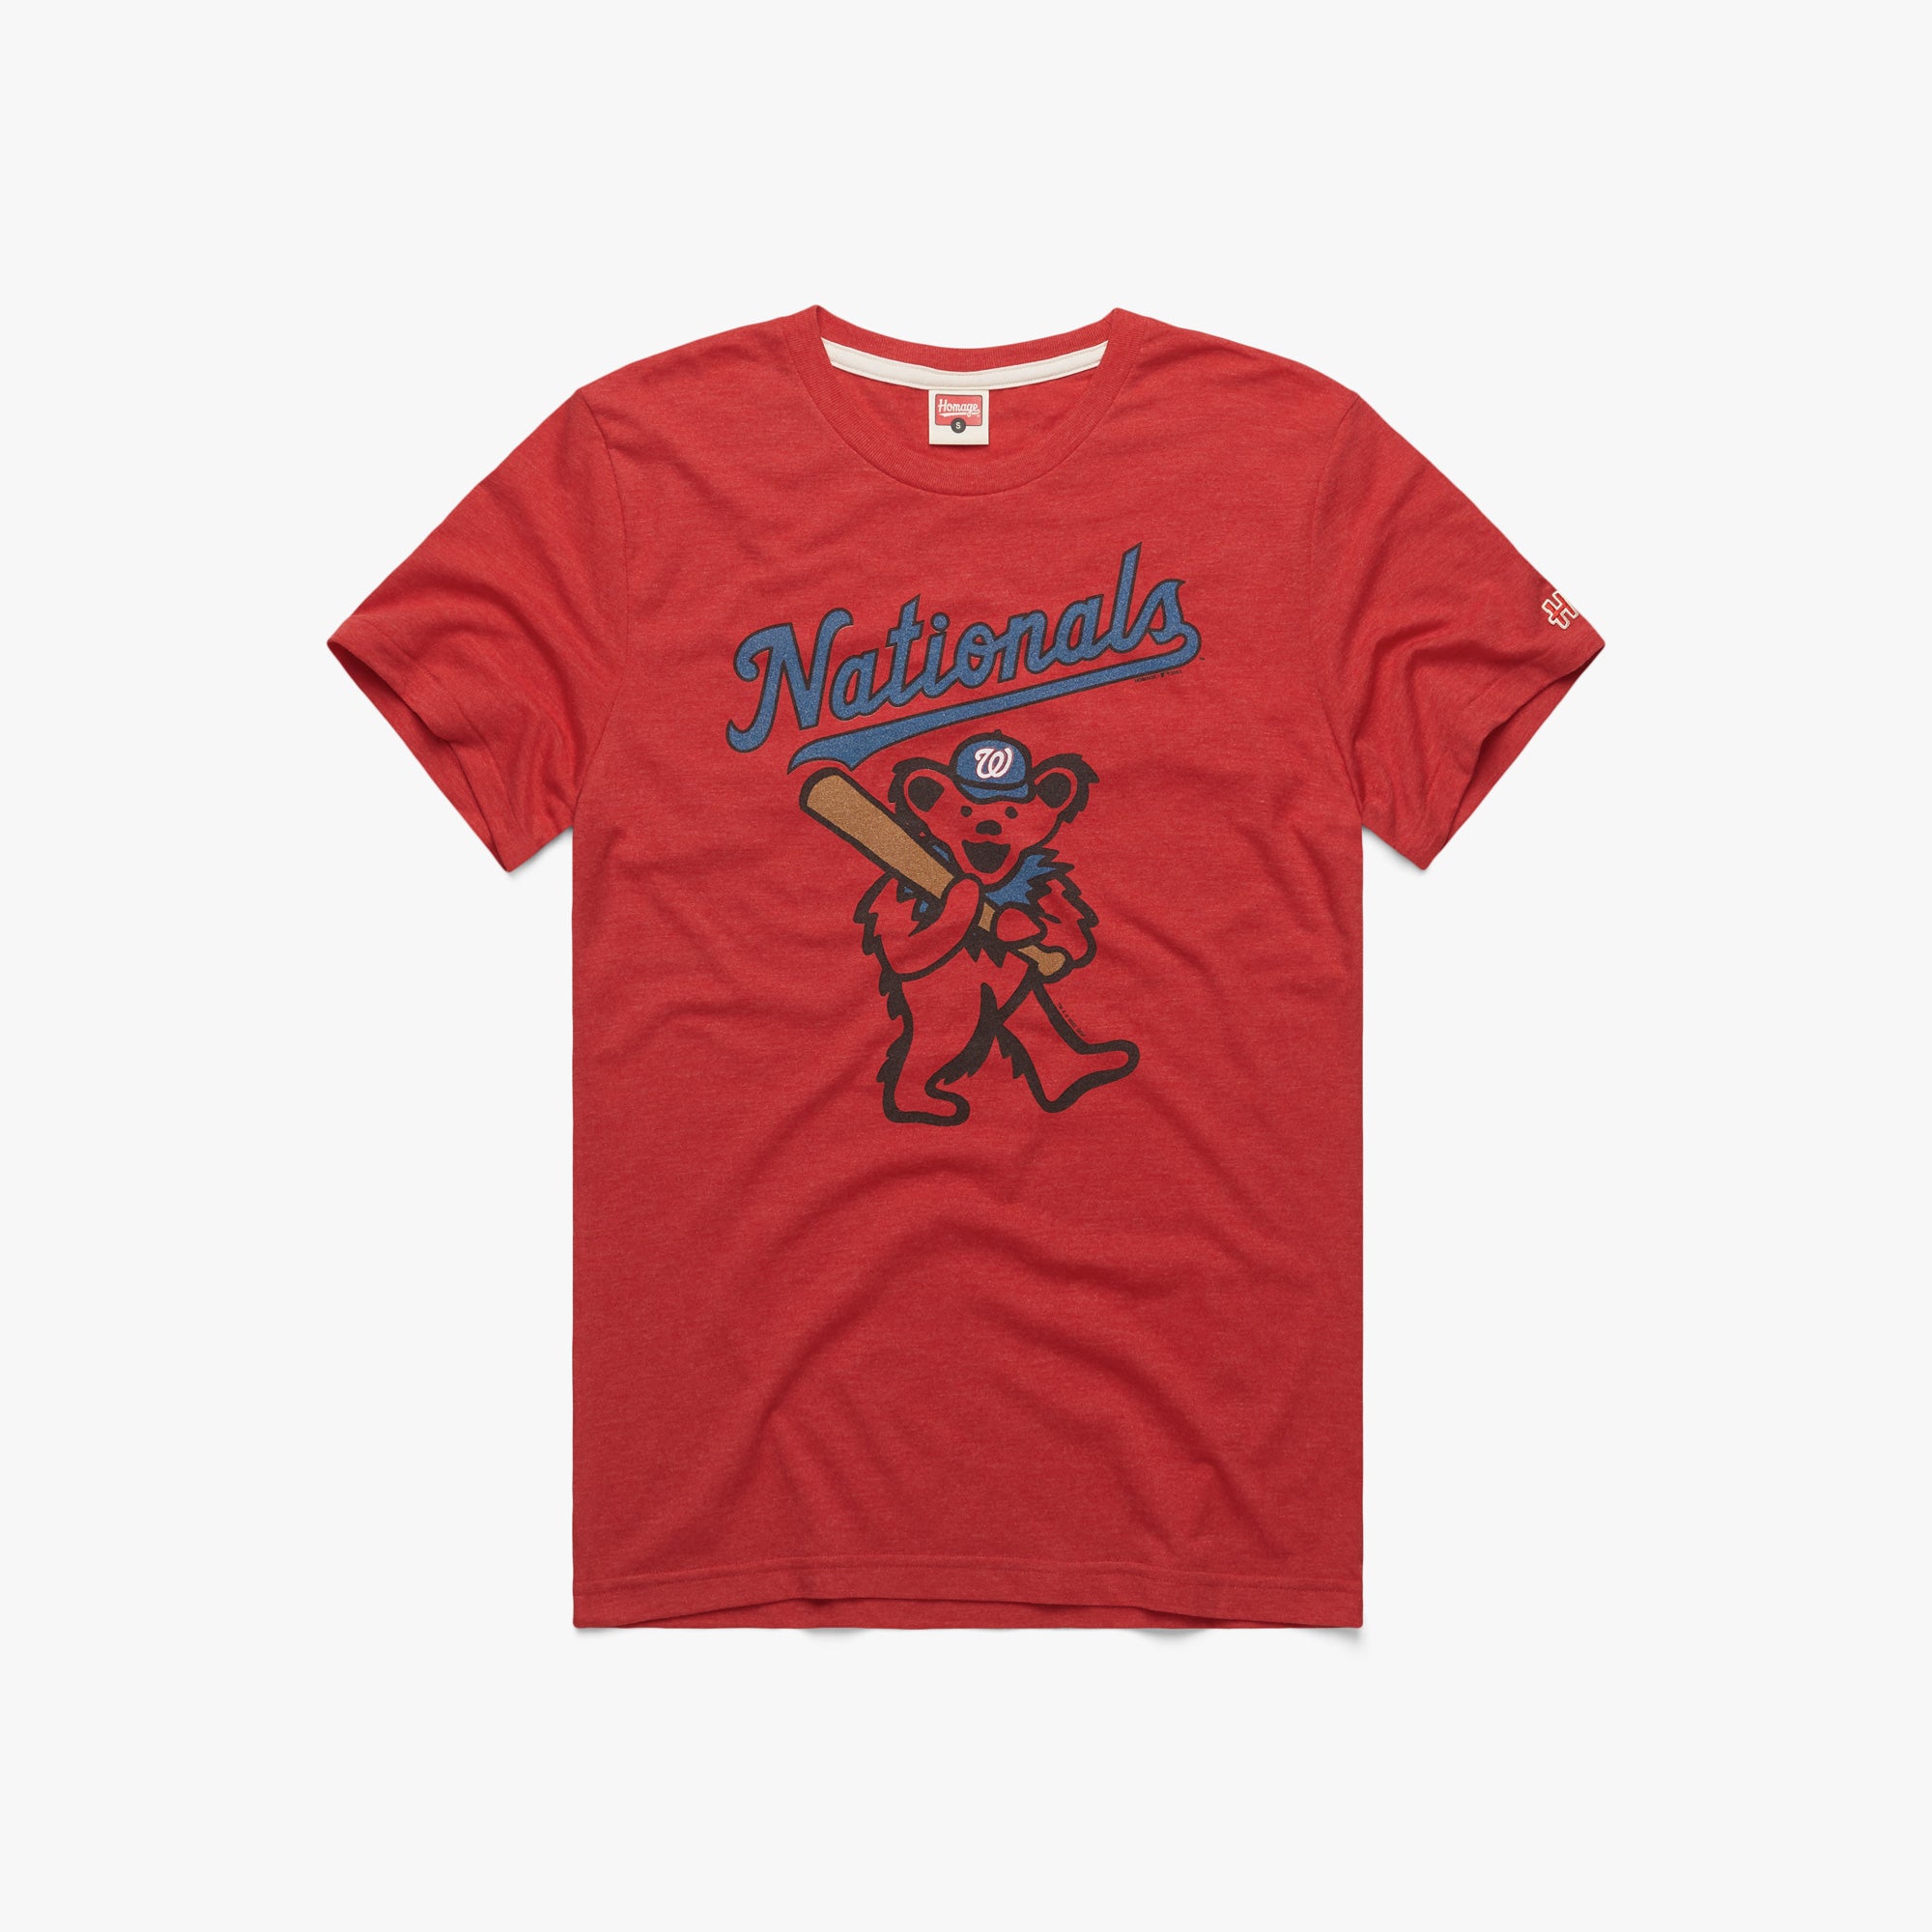 MLB T-Shirt - Washington Nationals, XL